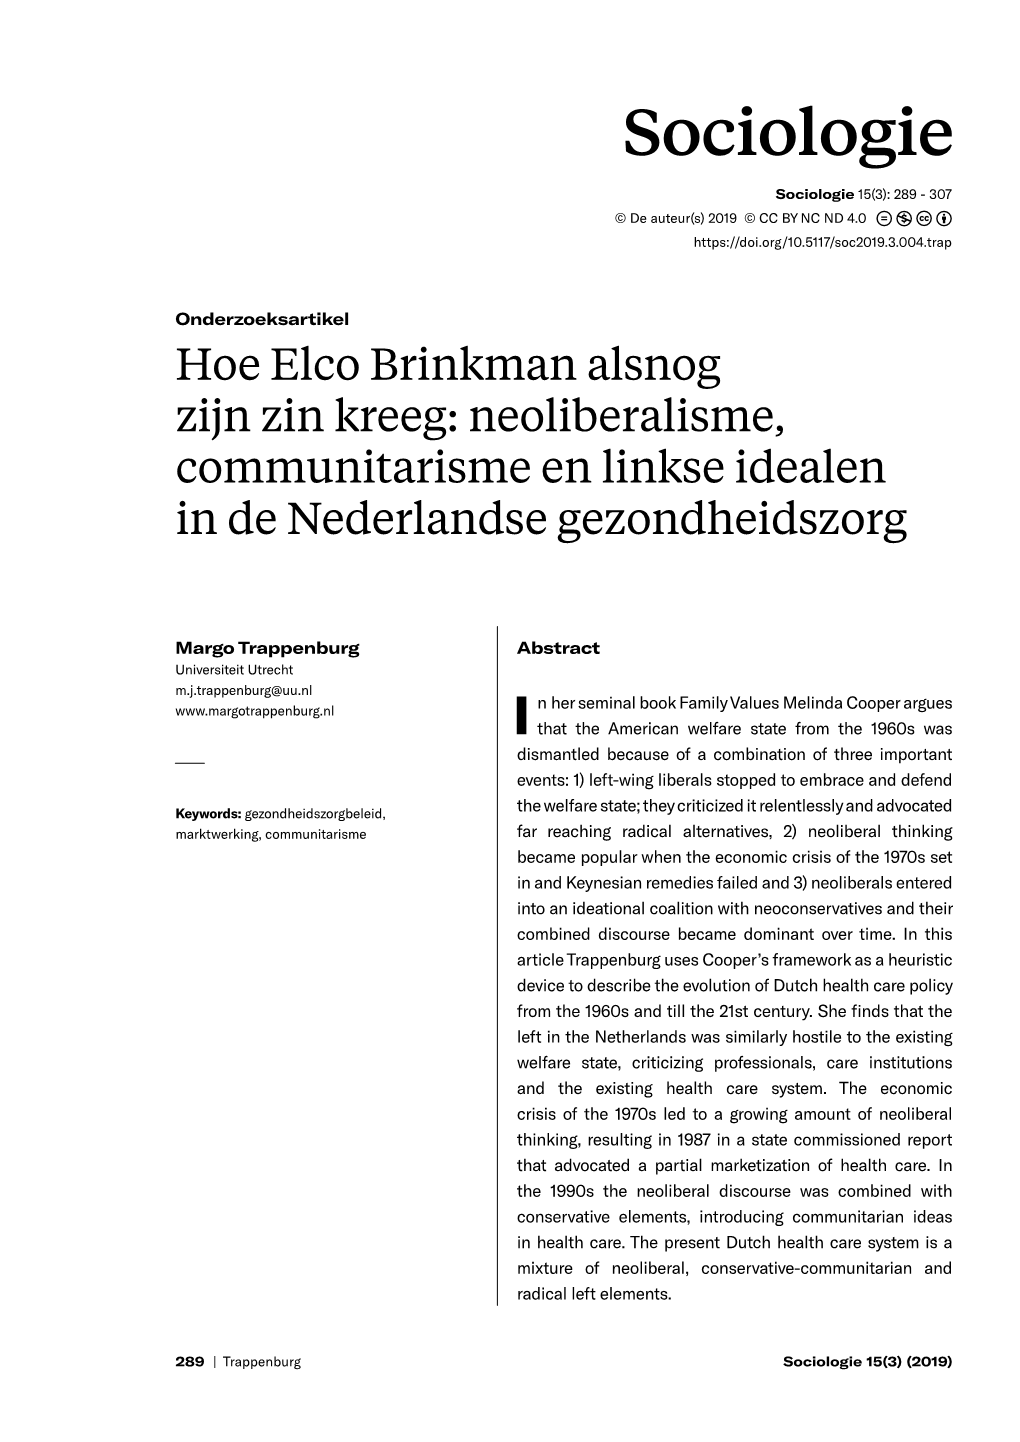 Hoe Elco Brinkman Alsnog Zijn Zin Kreeg: Neoliberalisme, Communitarisme En Linkse Idealen in De Nederlandse Gezondheidszorg